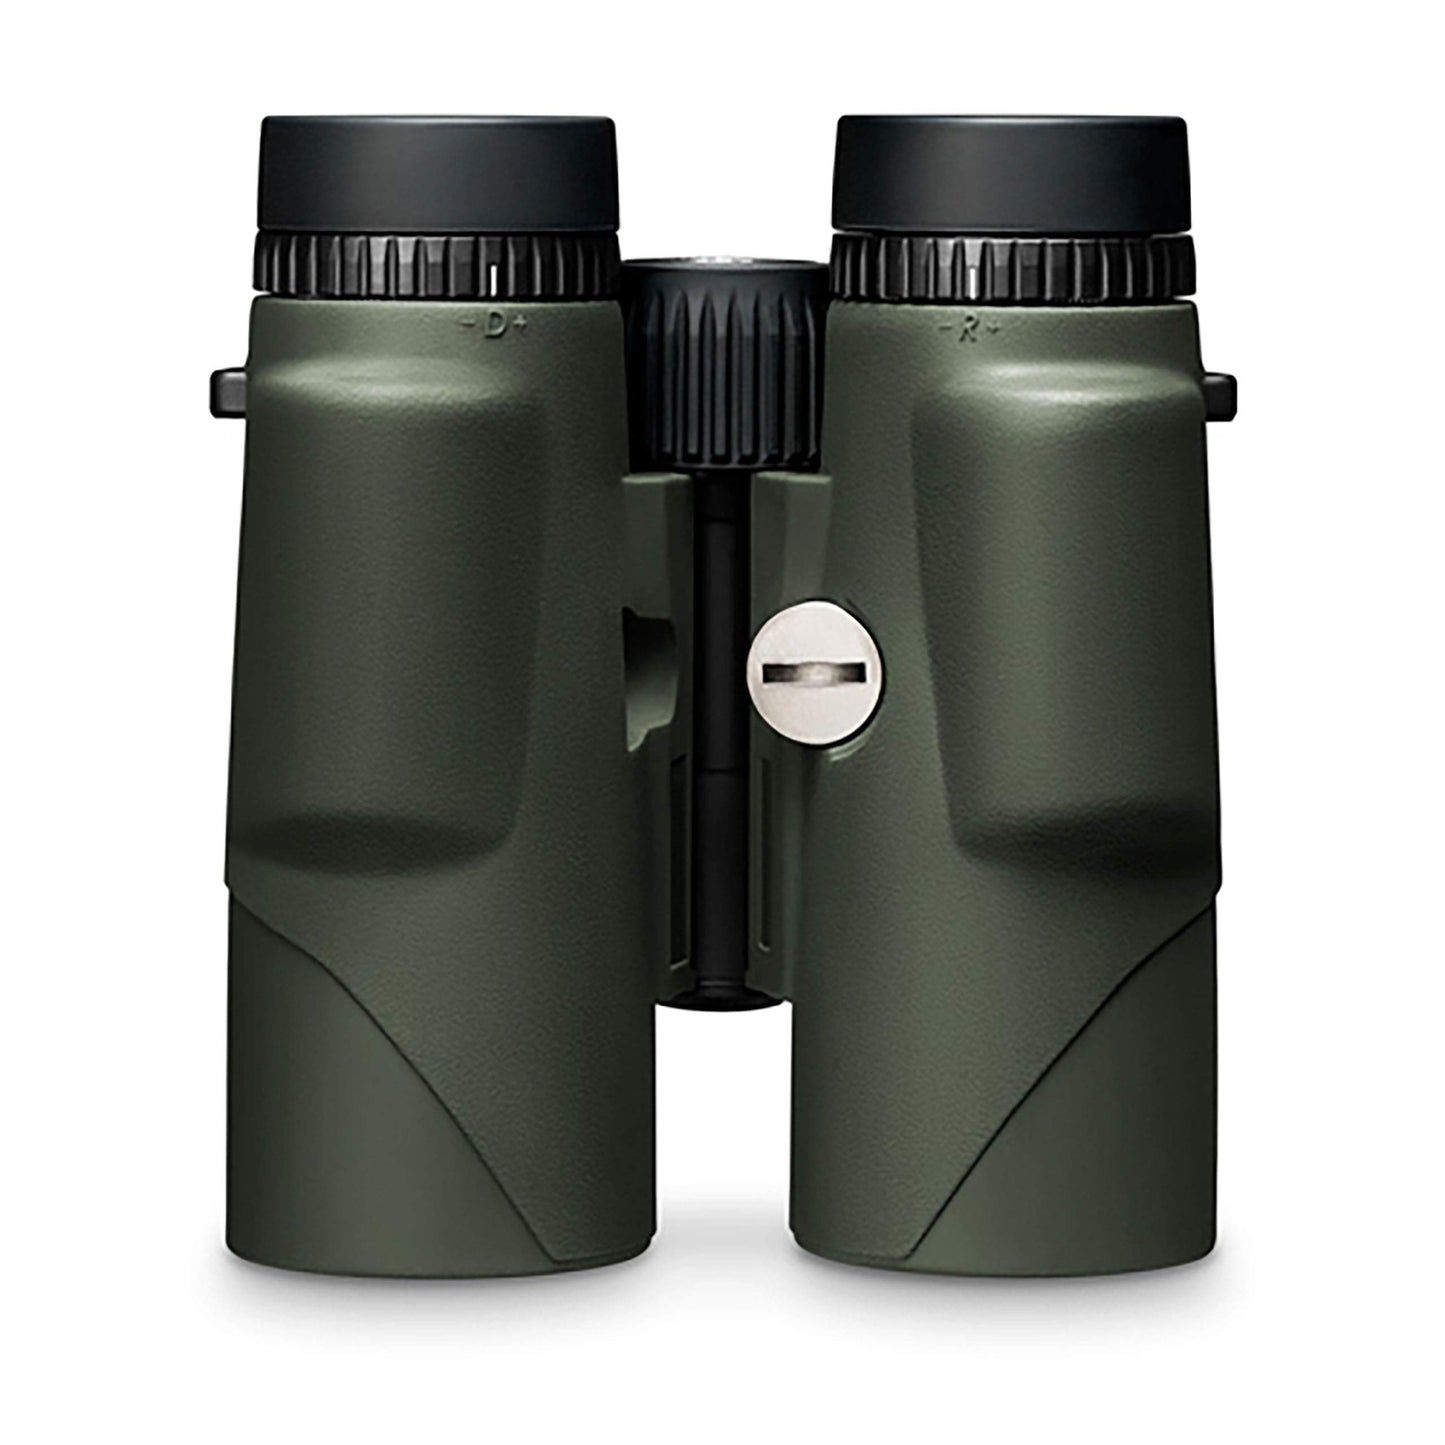 Vortex Optics Fury HD 5000 10x42 Laser Rangefinding Binoculars - LRF301